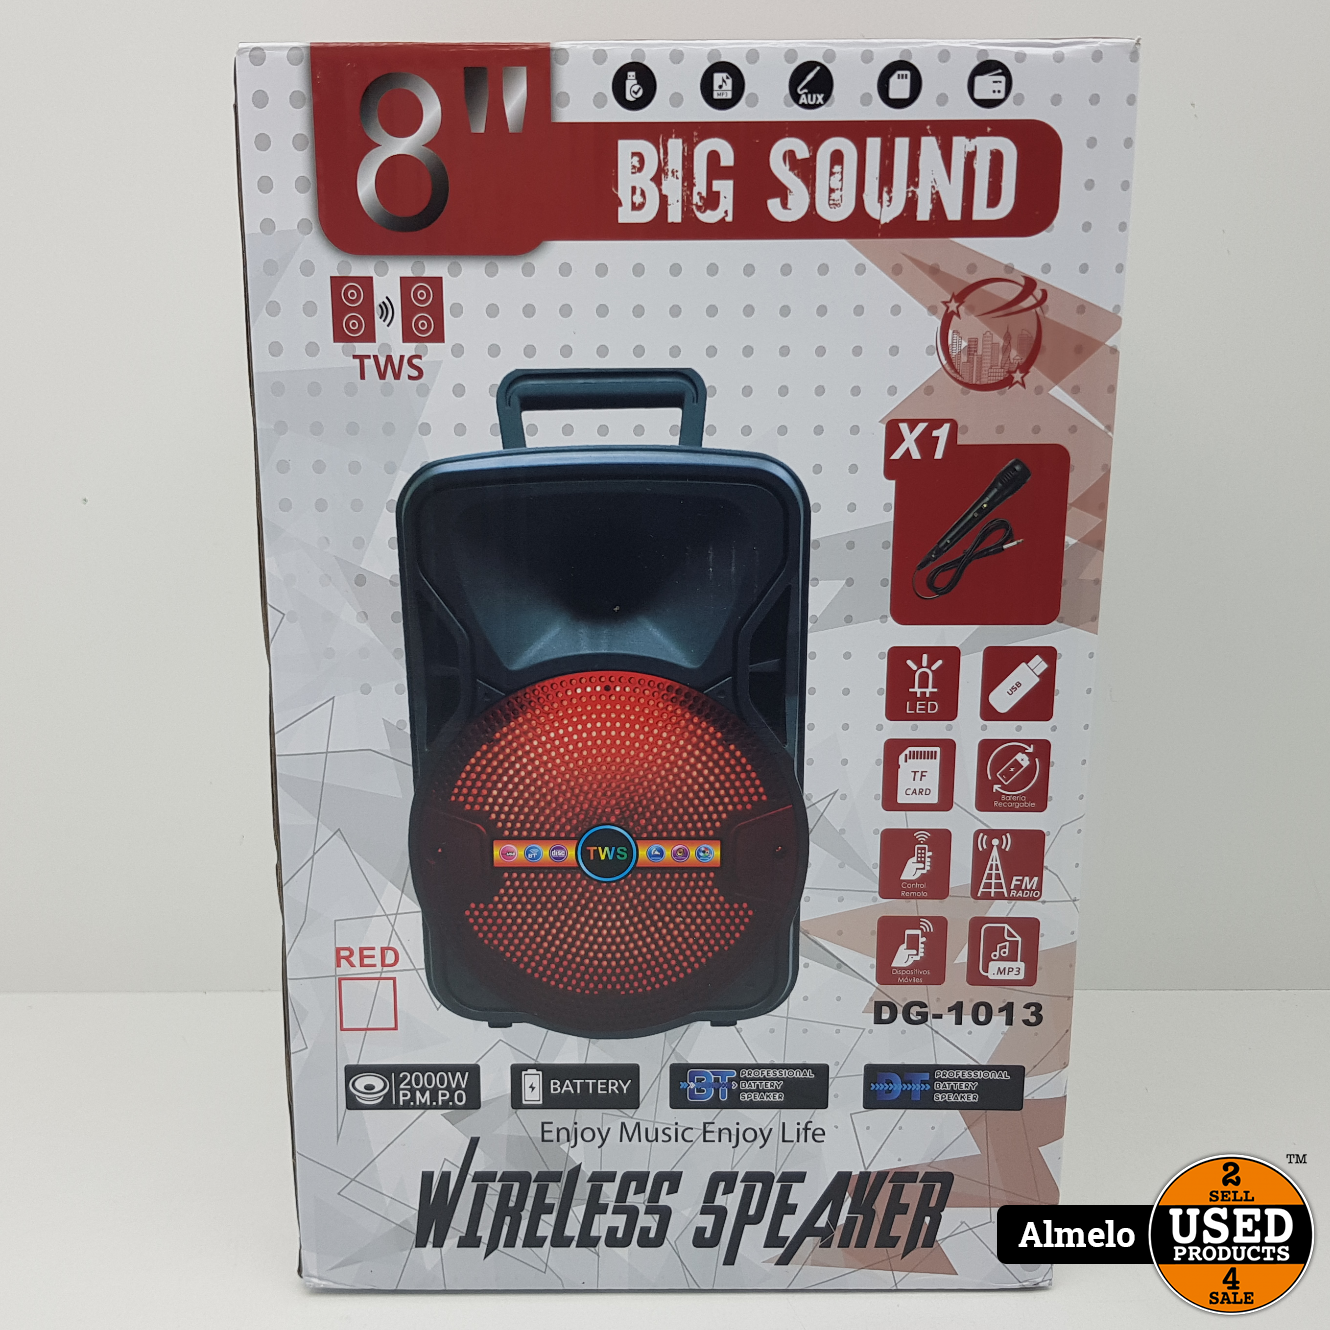 Zeeanemoon Huh Donau Big sound Big Sound 8 inch Wireless Speaker Zwart *Nieuw geseald* - Used  Products Almelo